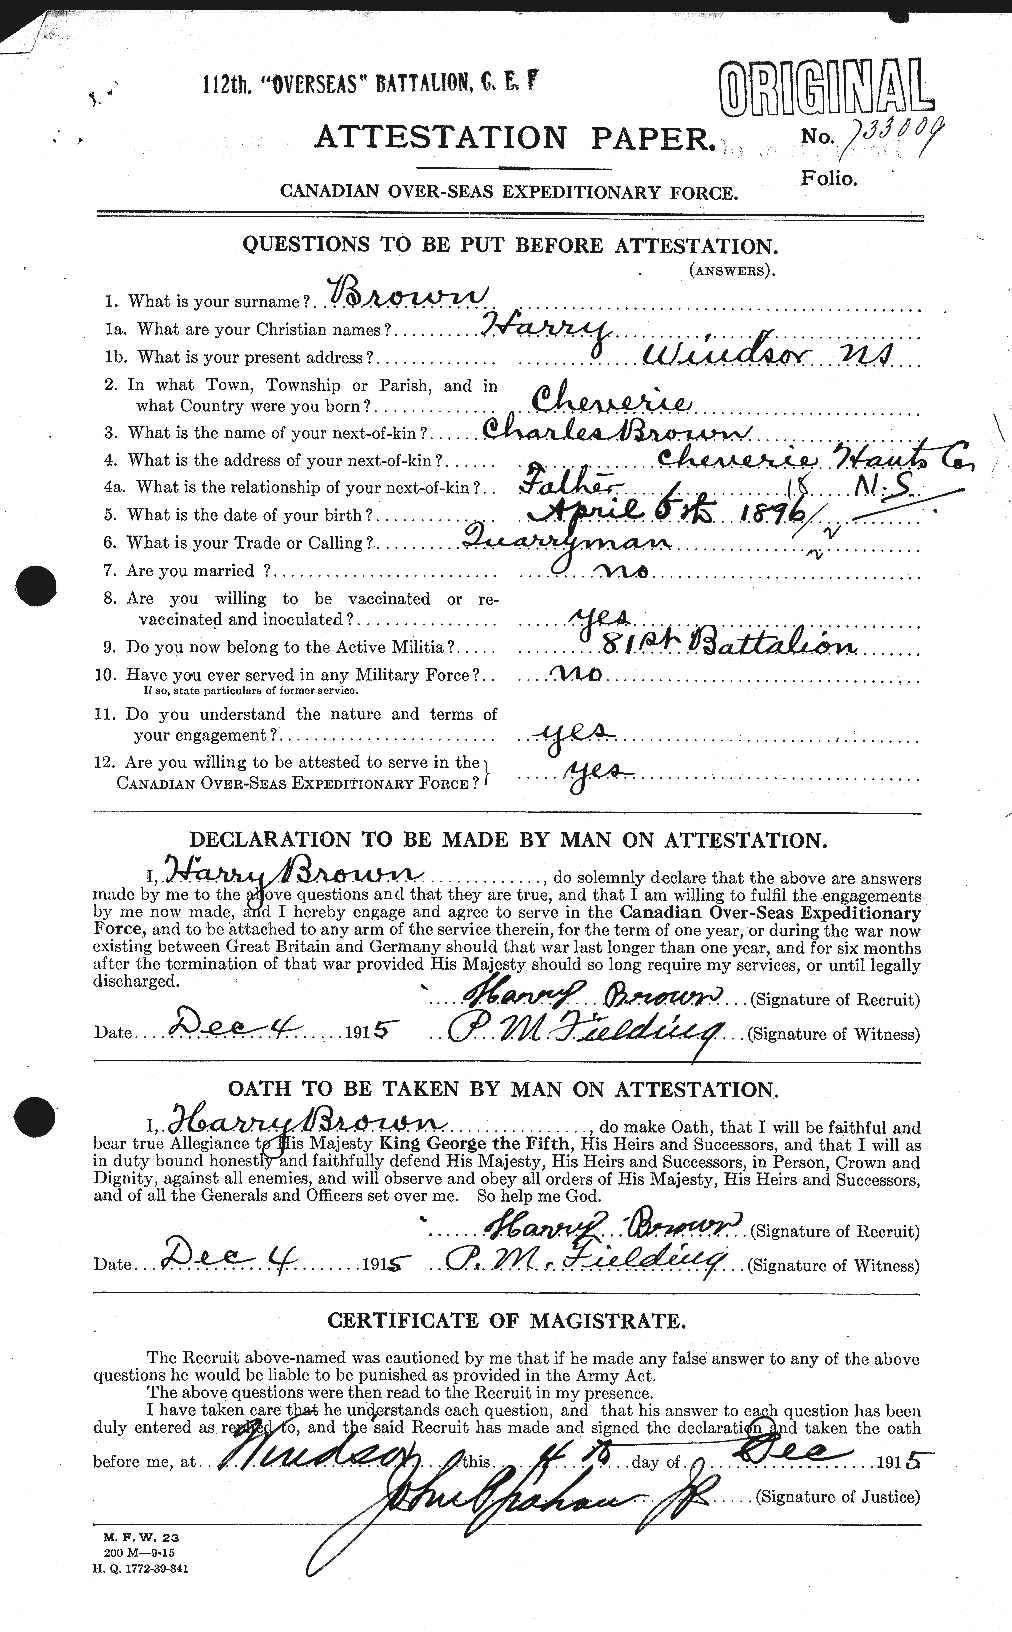 Dossiers du Personnel de la Première Guerre mondiale - CEC 265384a